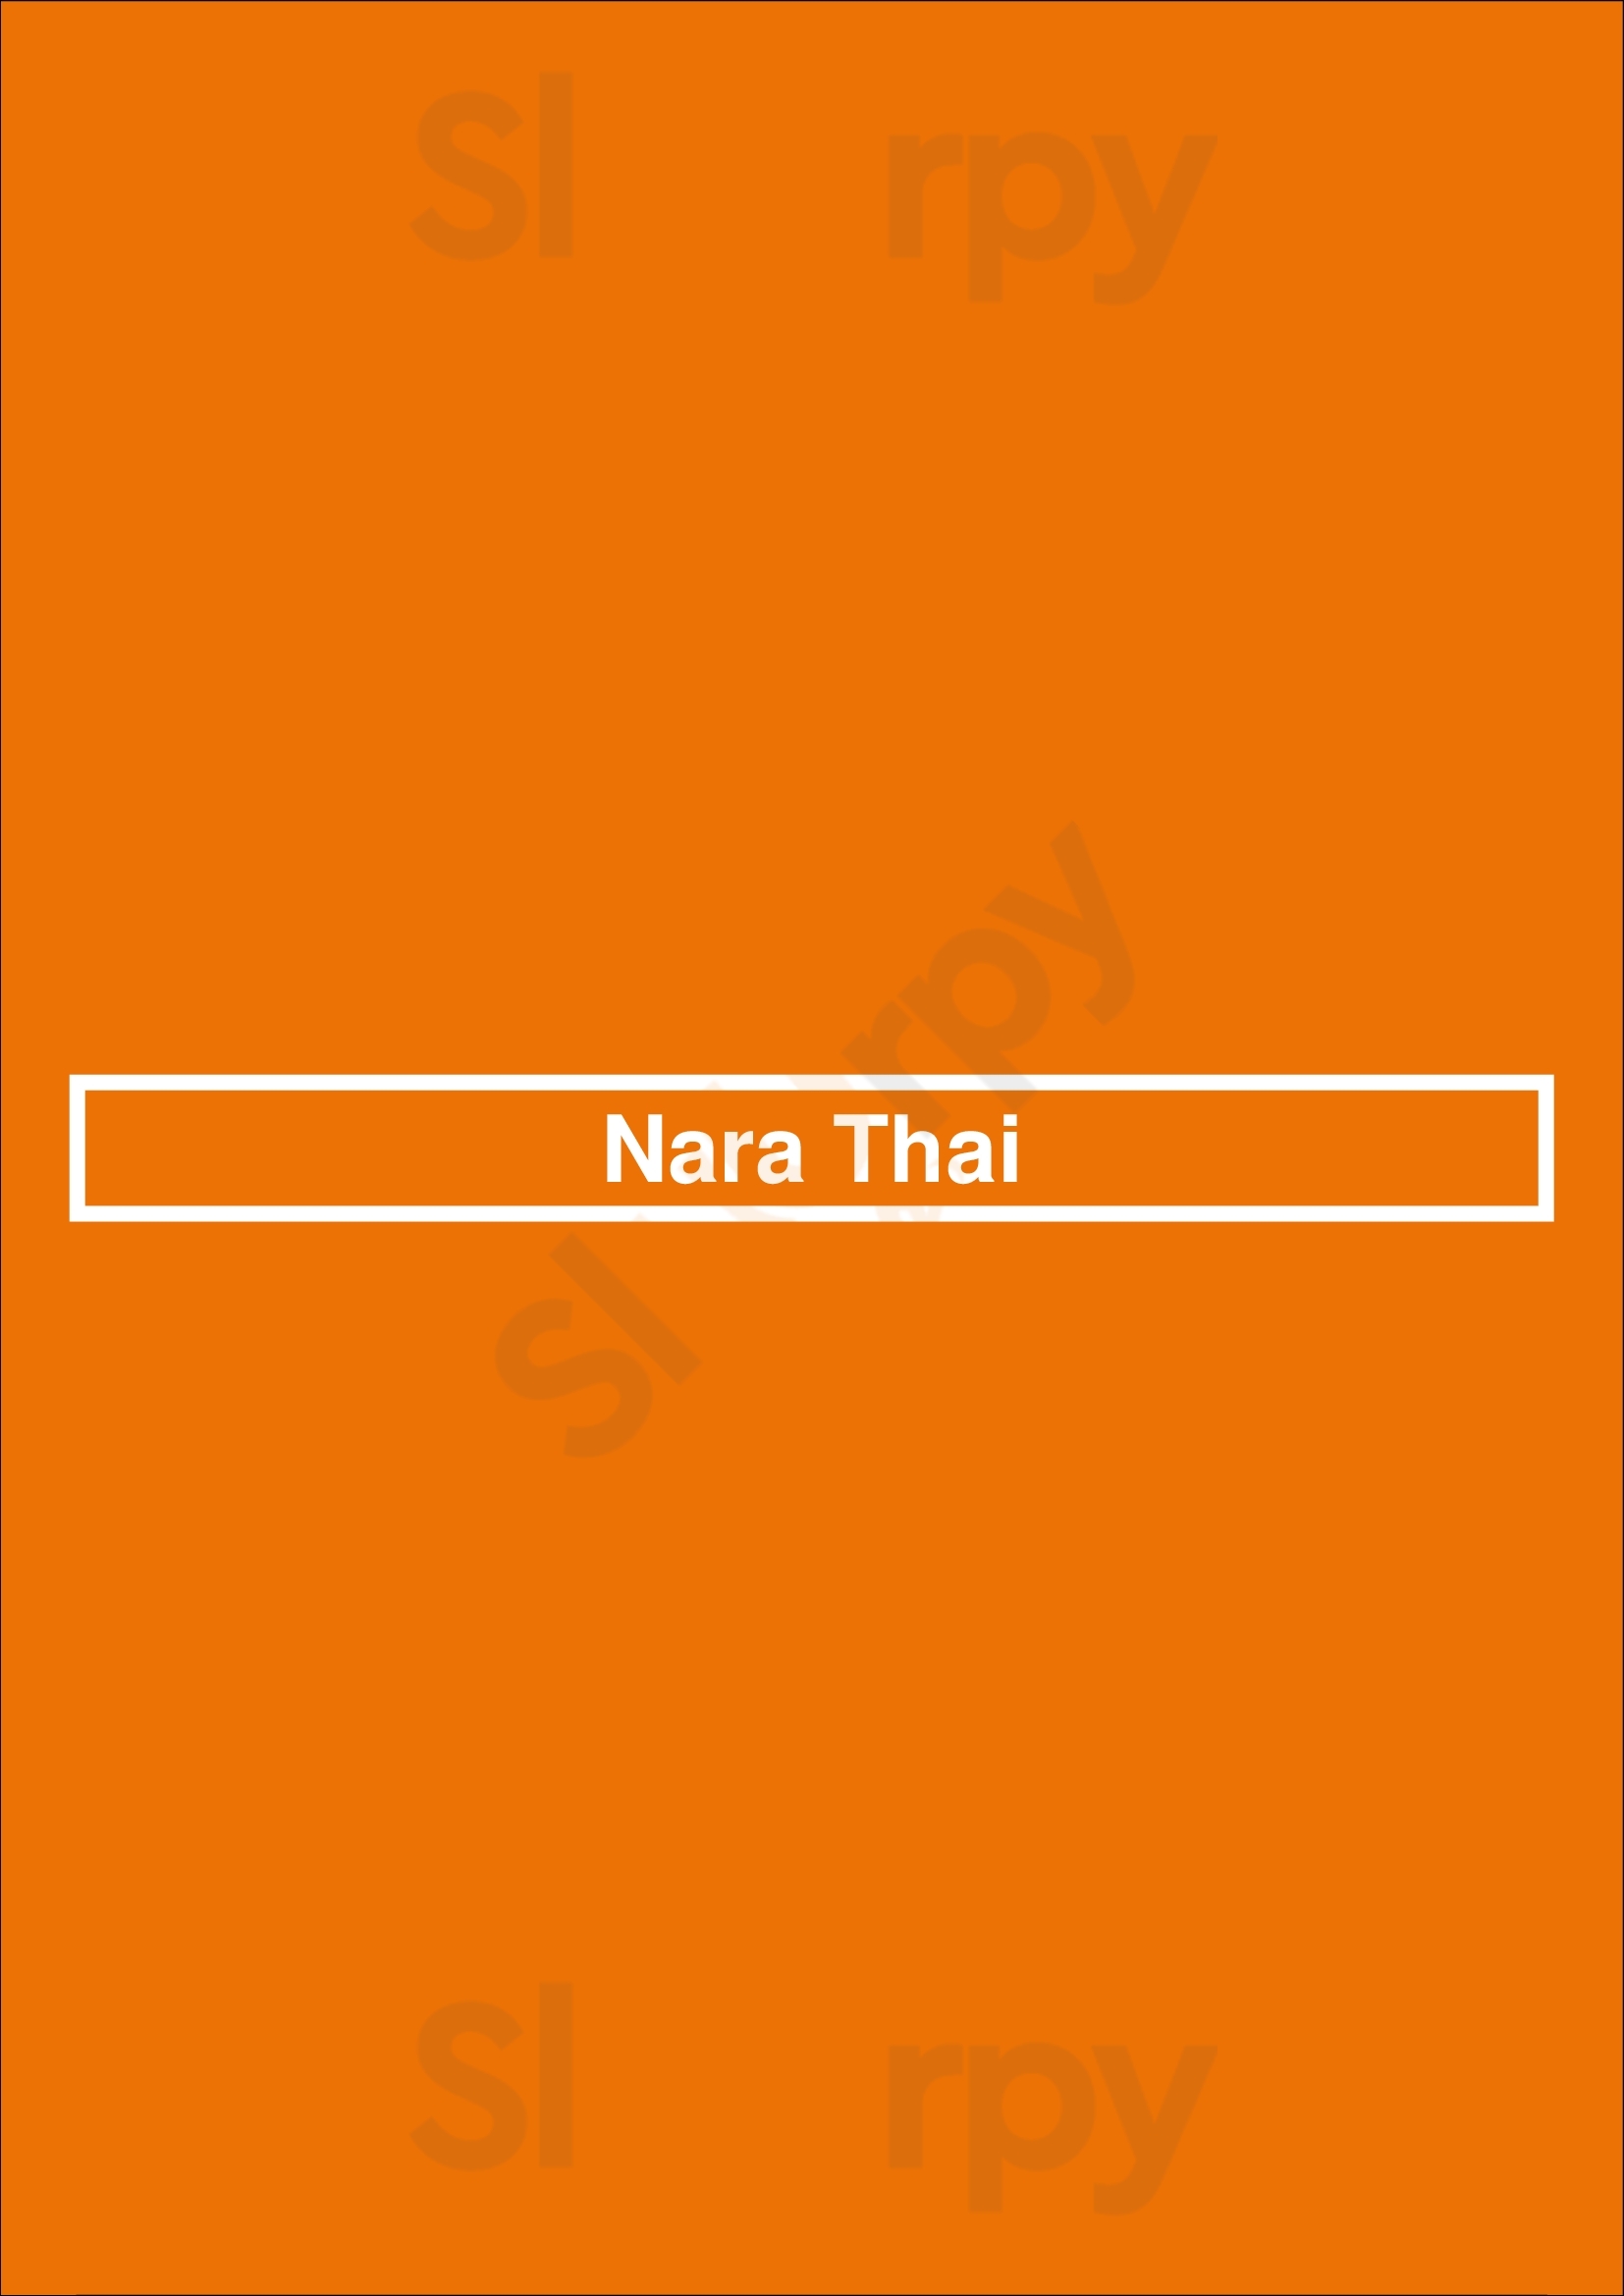 Nara Thai Houston Menu - 1